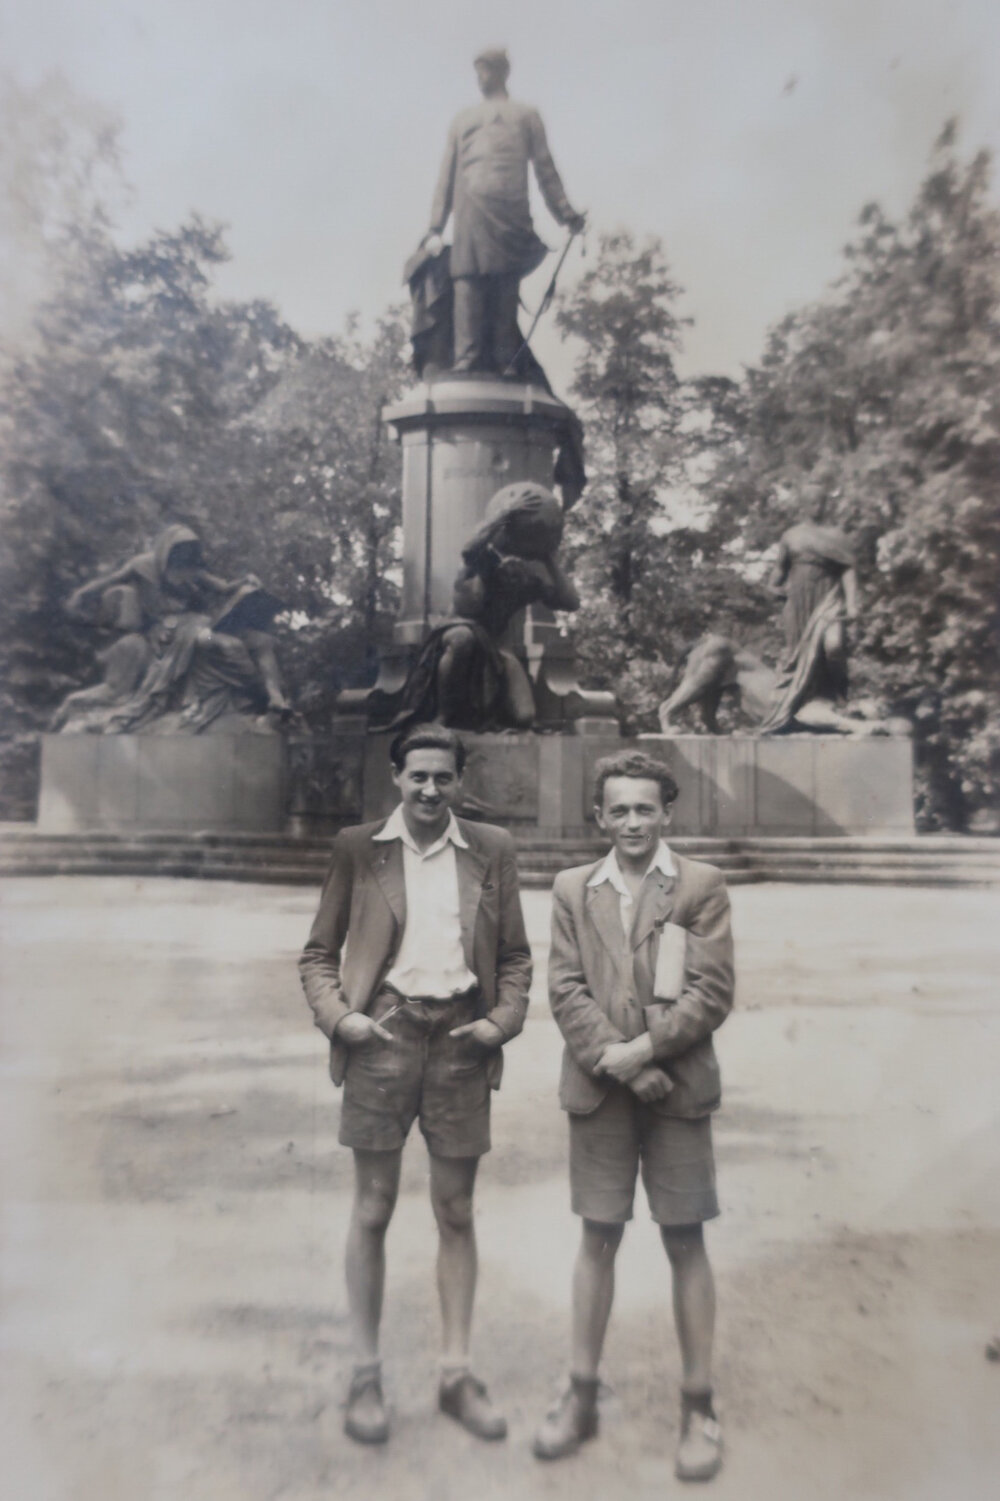 Hans and Zdenek in Berlin